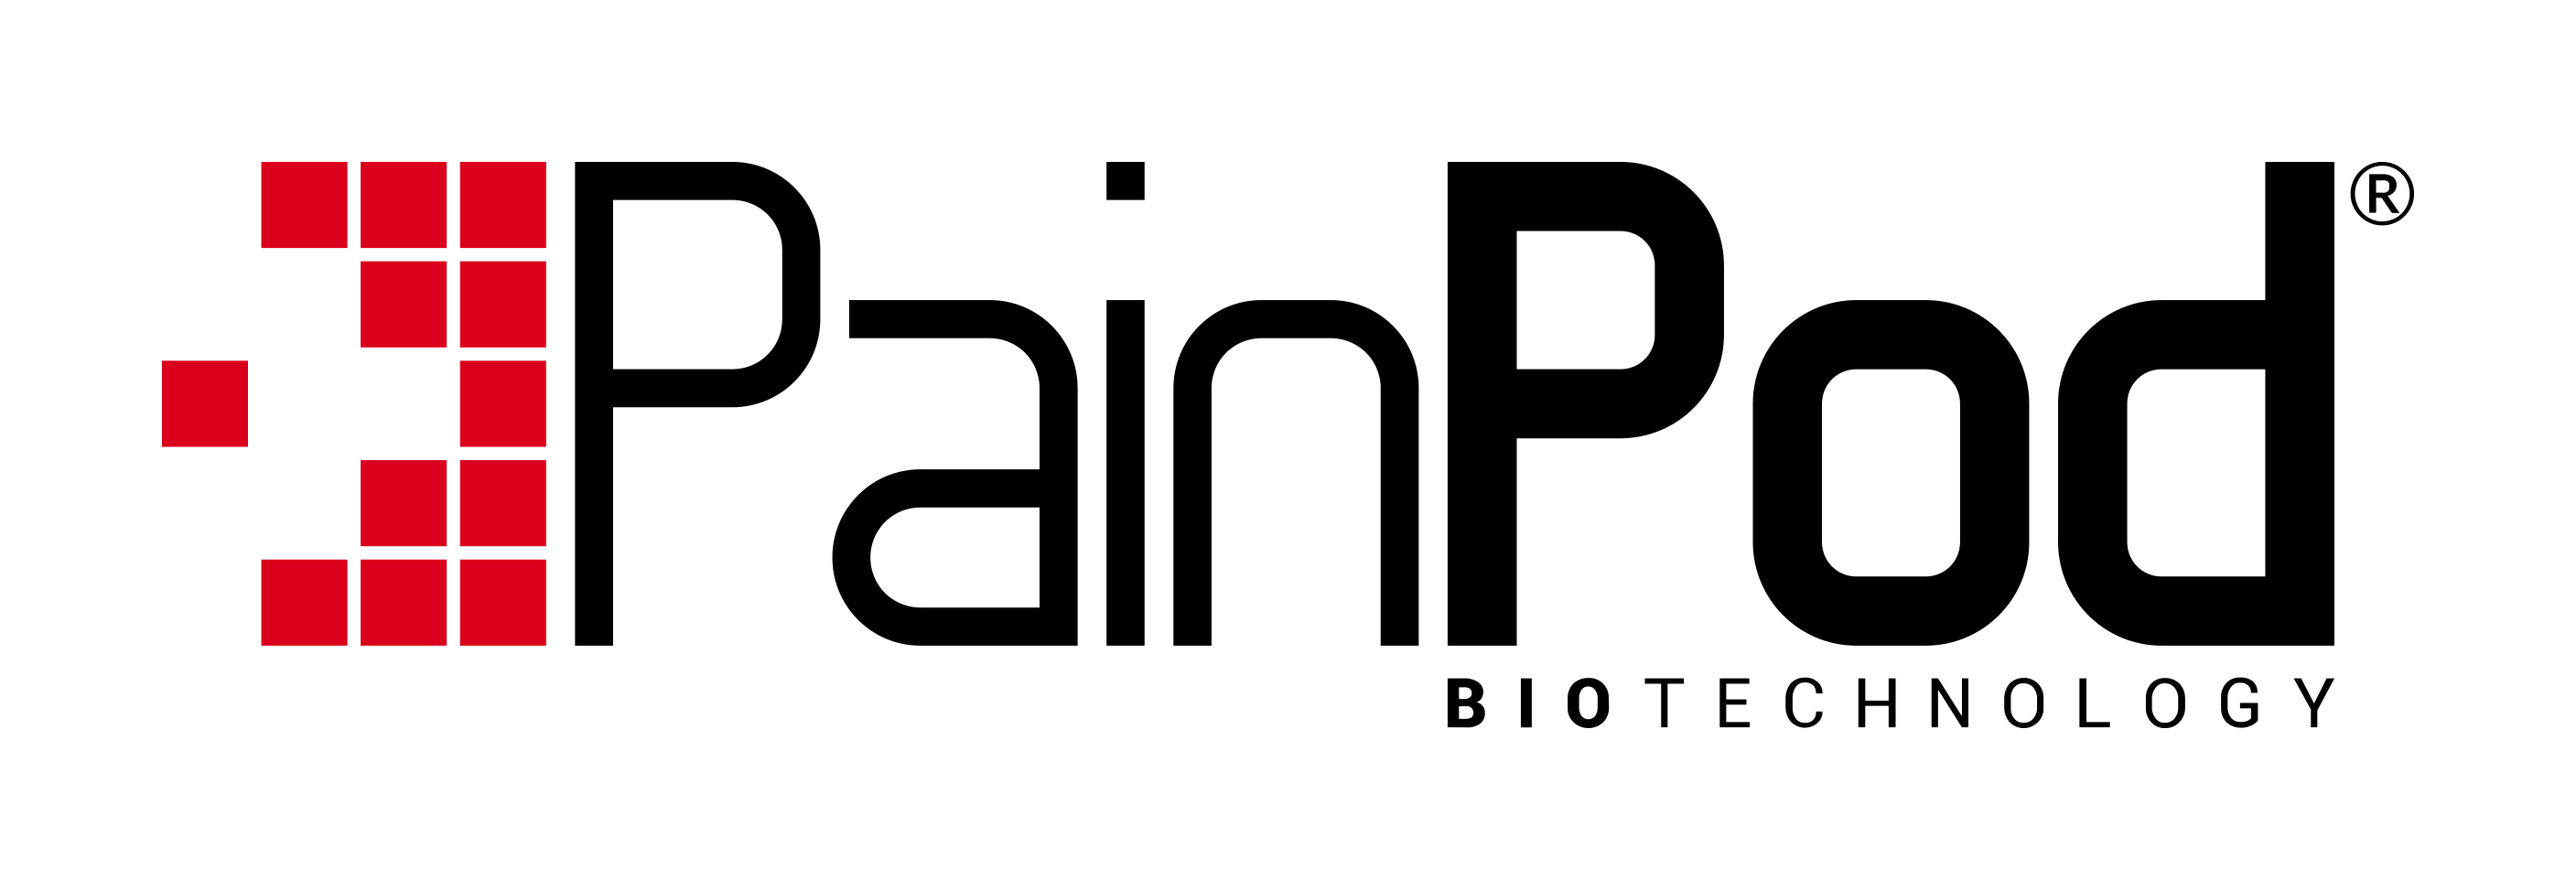 Painpod Logo 2018 01